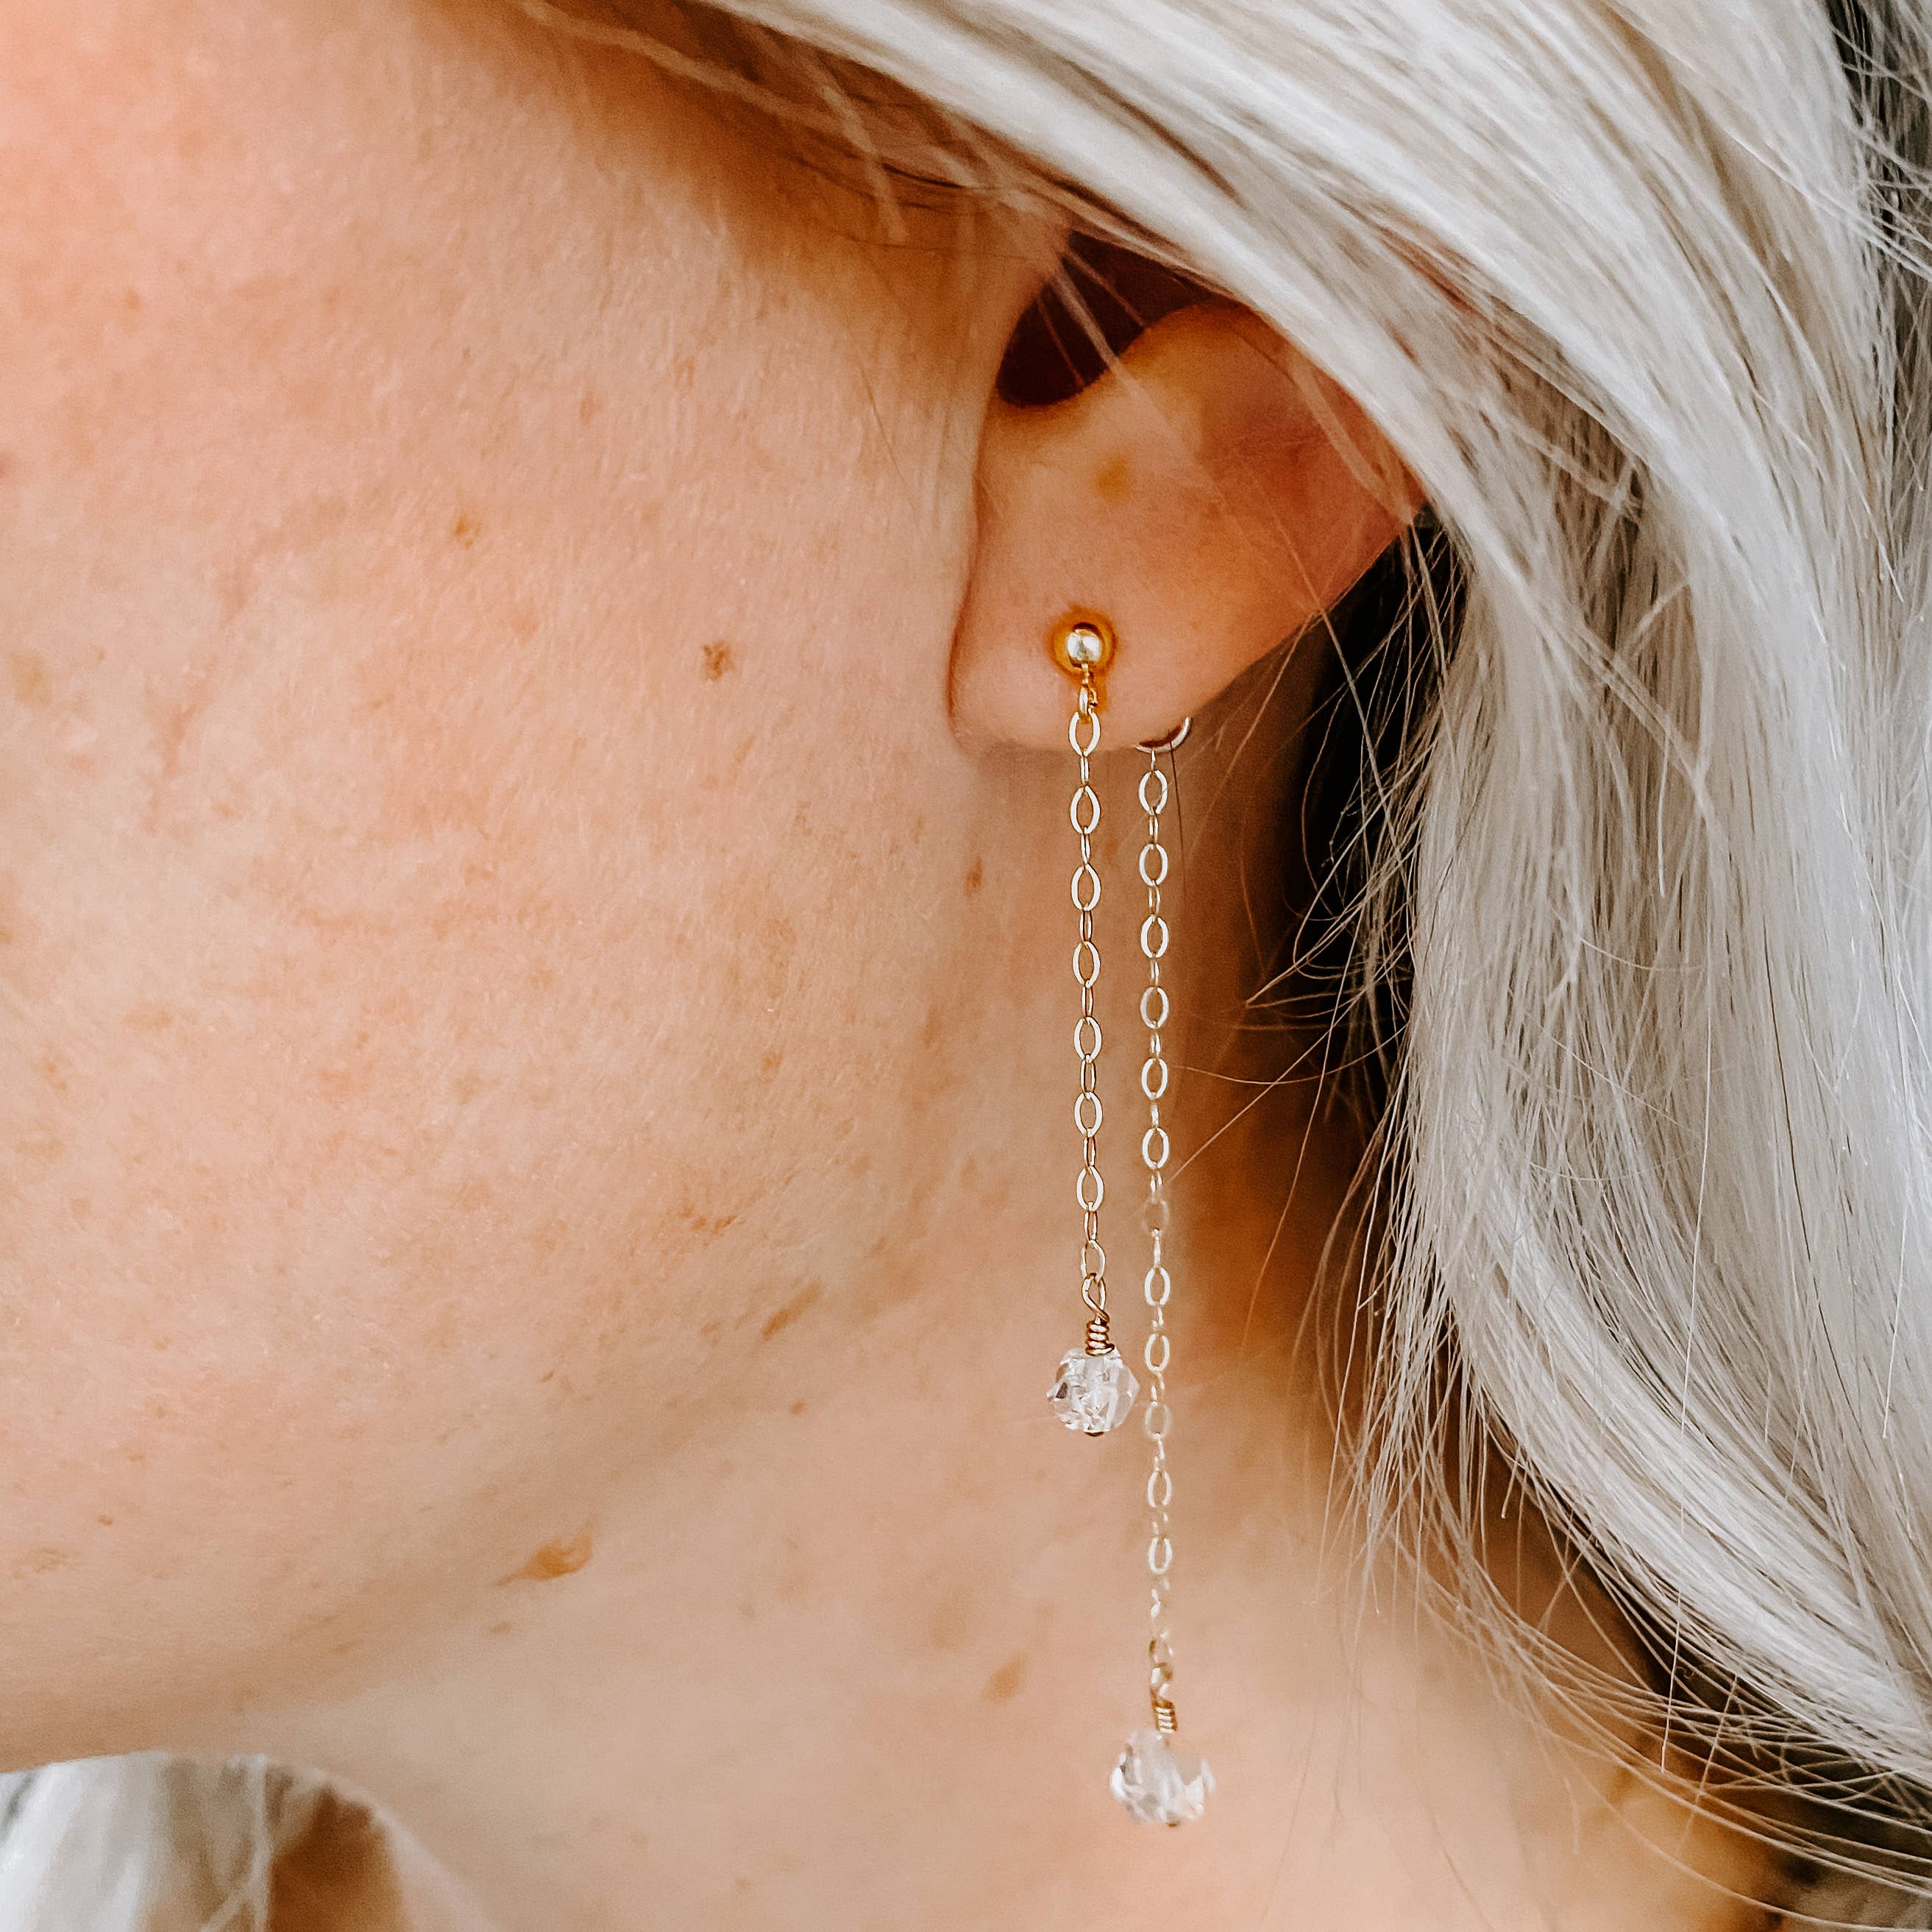 chain earrings with diamonds